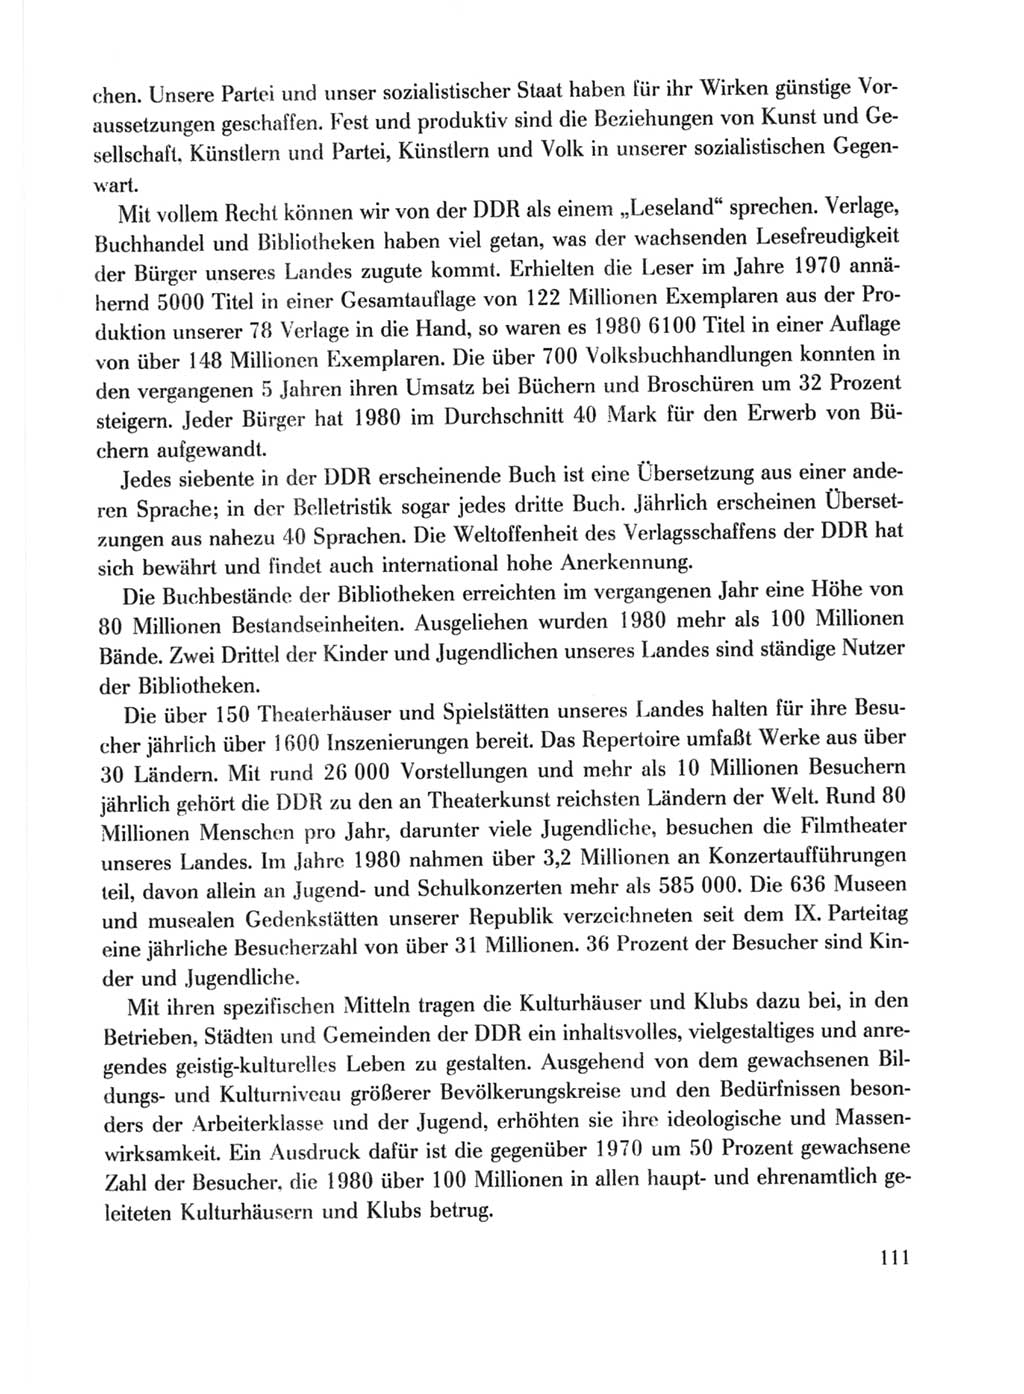 Protokoll der Verhandlungen des Ⅹ. Parteitages der Sozialistischen Einheitspartei Deutschlands (SED) [Deutsche Demokratische Republik (DDR)] 1981, Band 1, Seite 111 (Prot. Verh. Ⅹ. PT SED DDR 1981, Bd. 1, S. 111)